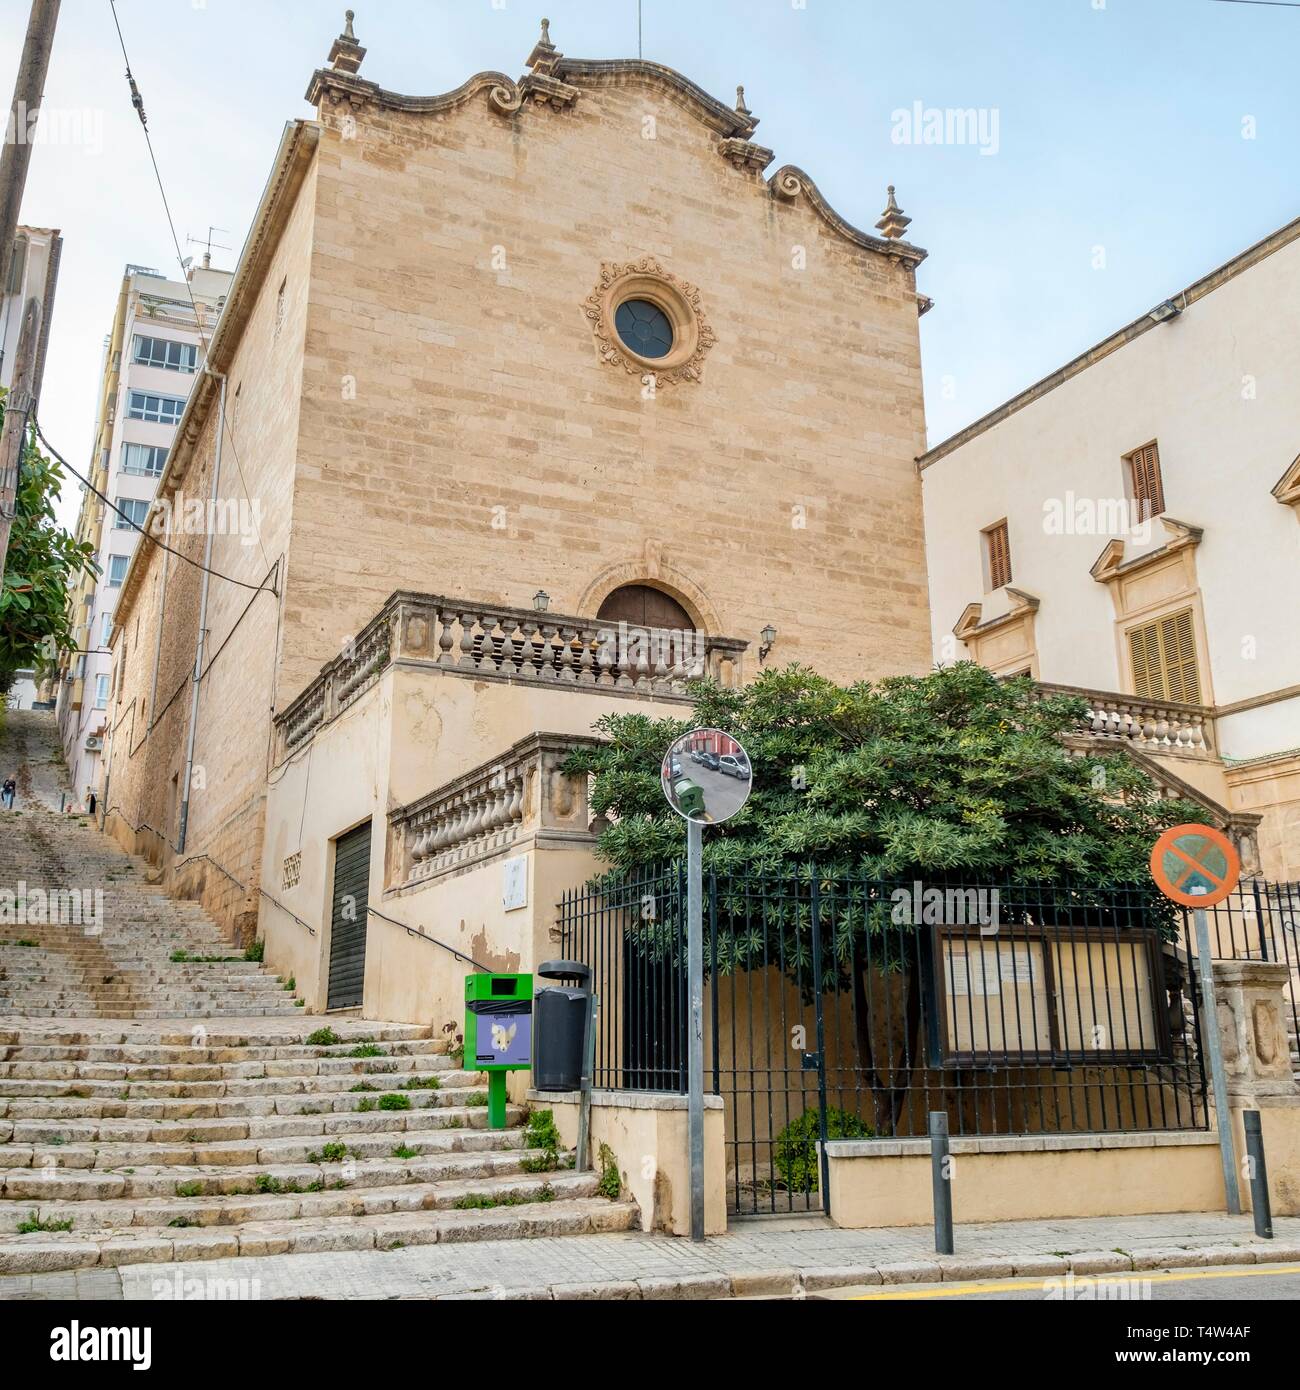 Parròquia de la Mare de Déu de la Salut, El Terreno, Palma, Mallorca, Spain. Stock Photo